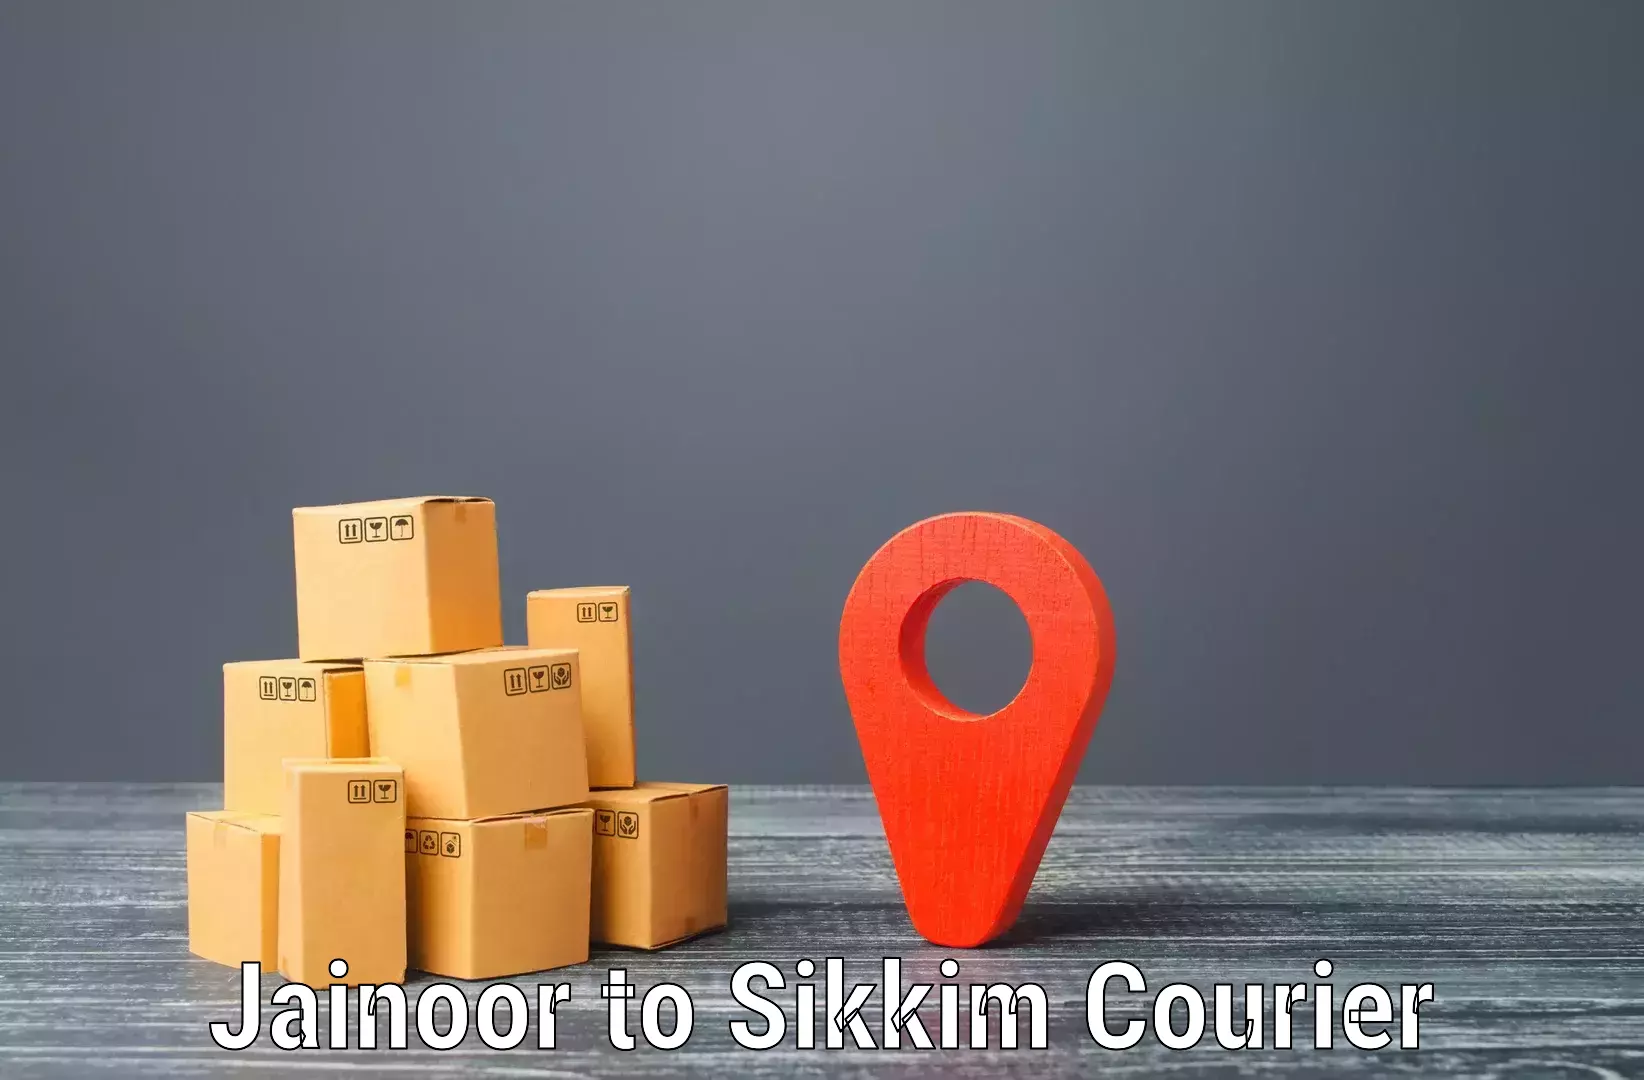 Smart shipping technology Jainoor to Sikkim